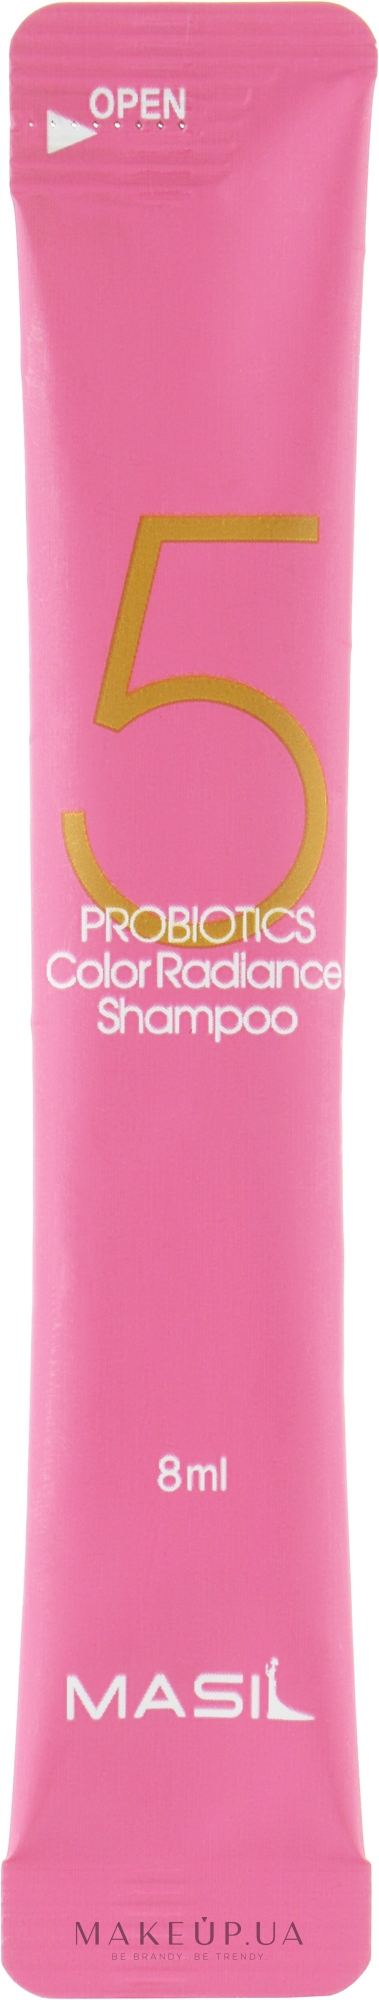 Шампунь с пробиотиками для защиты цвета - Masil 5 Probiotics Color Radiance Shampoo (пробник) — фото 8ml